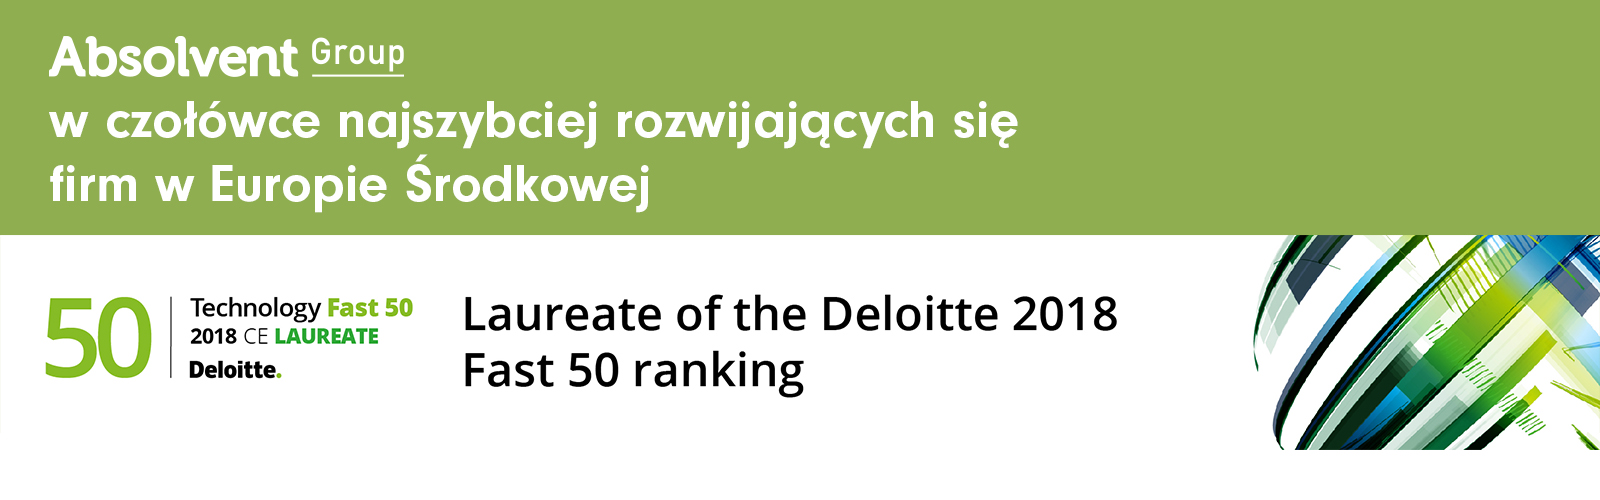 Grupa Absolvent w 50 najszybciej rozwijających się firm technologicznych w Europie Środkowej